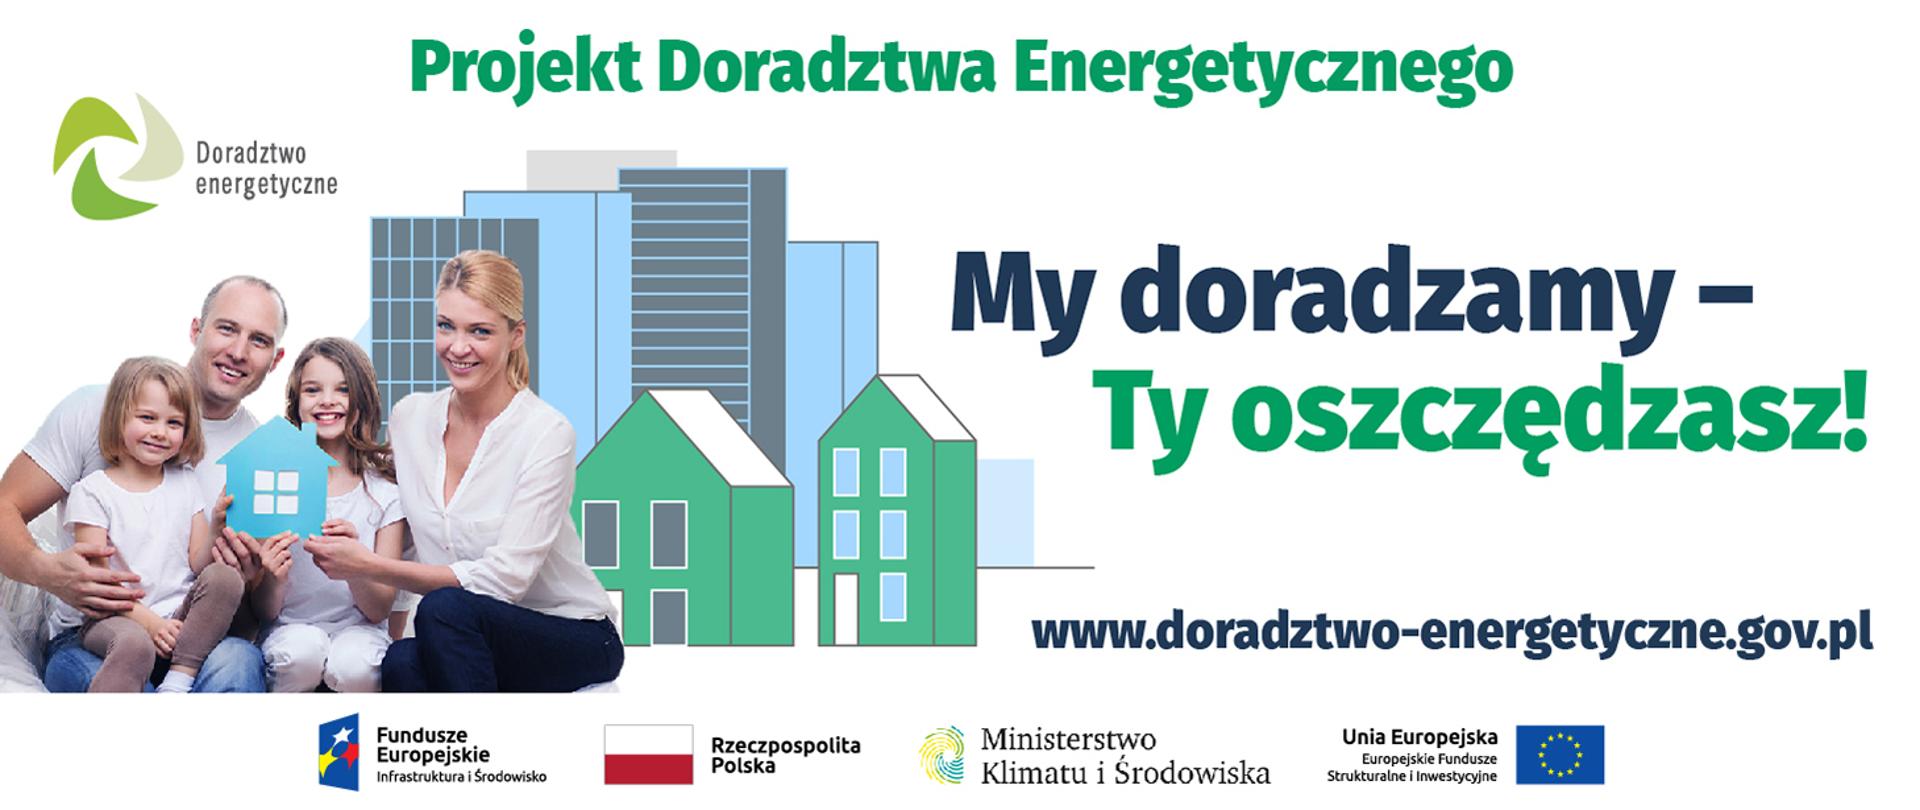 DFE_Doradztwo_Energetyczne_grafika_4